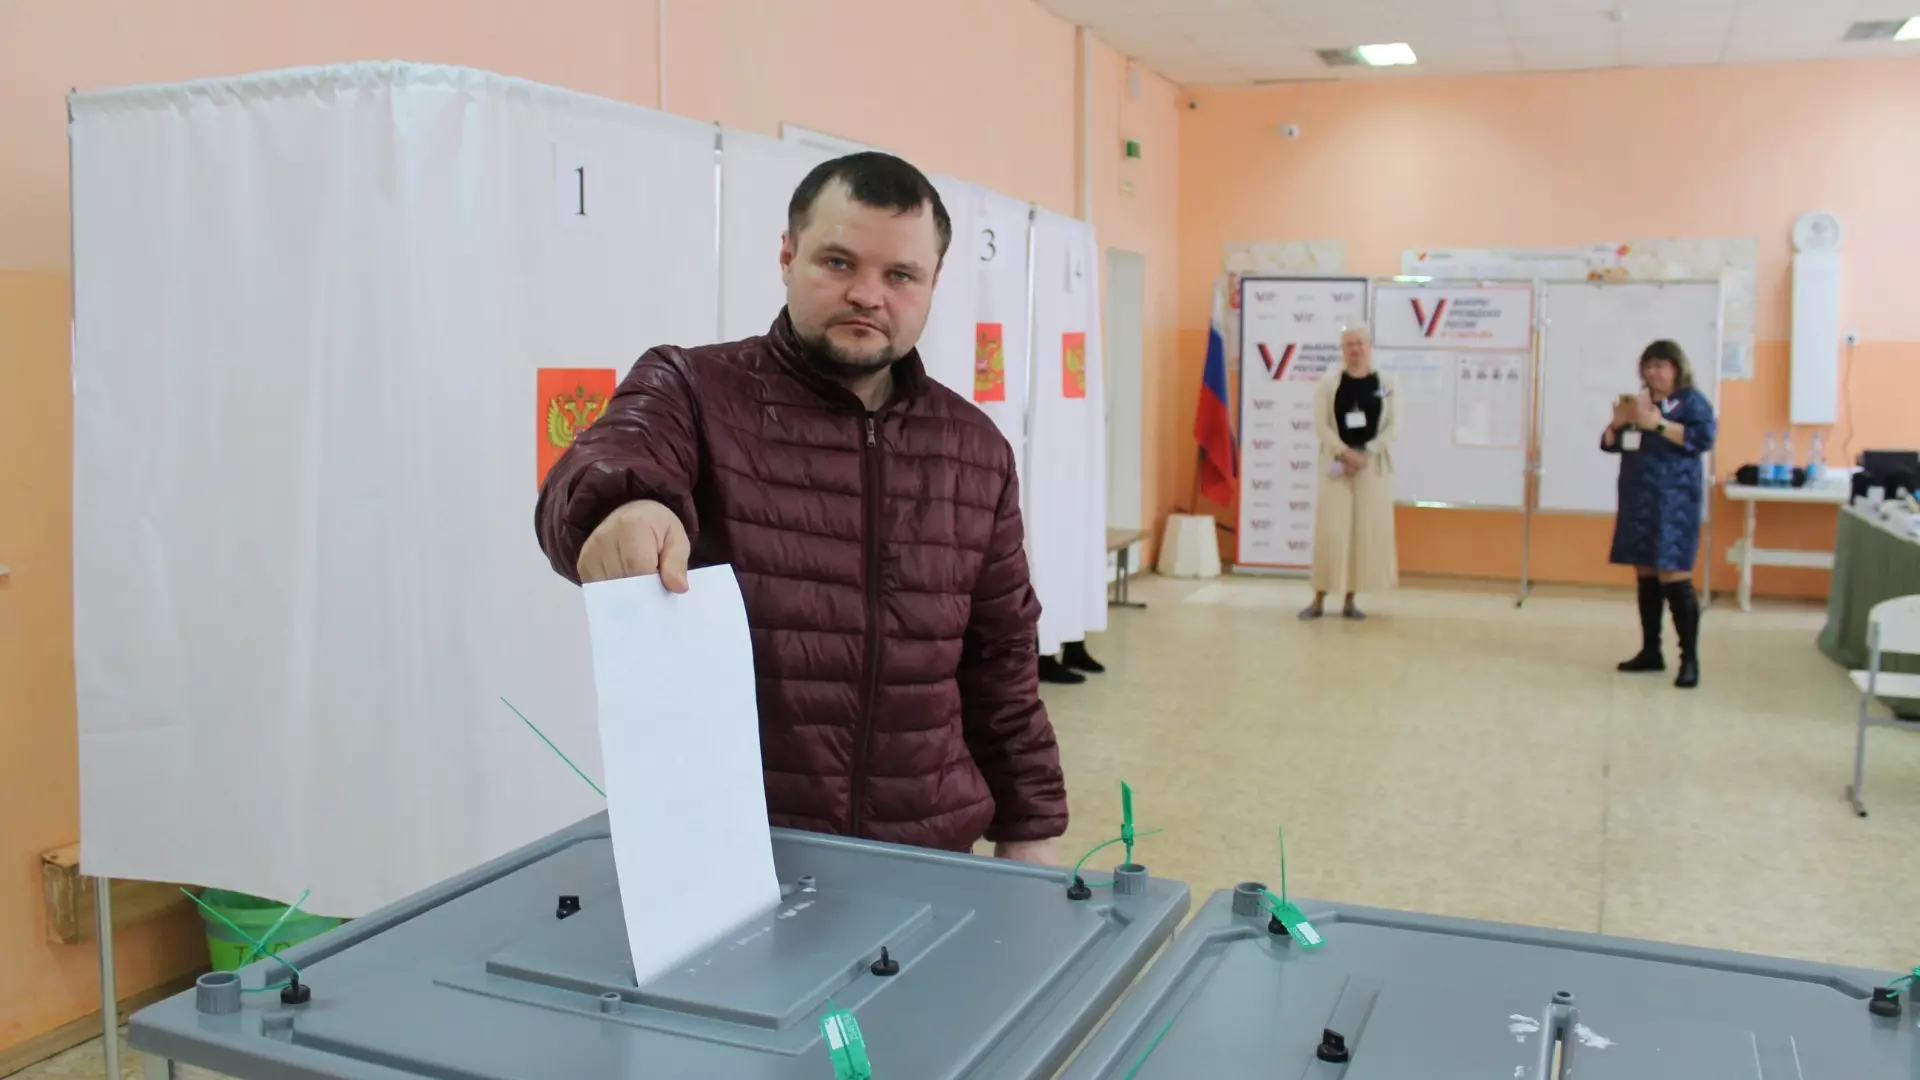 Блины и бюллетени: как проходят выборы президента в Волгограде 17 марта